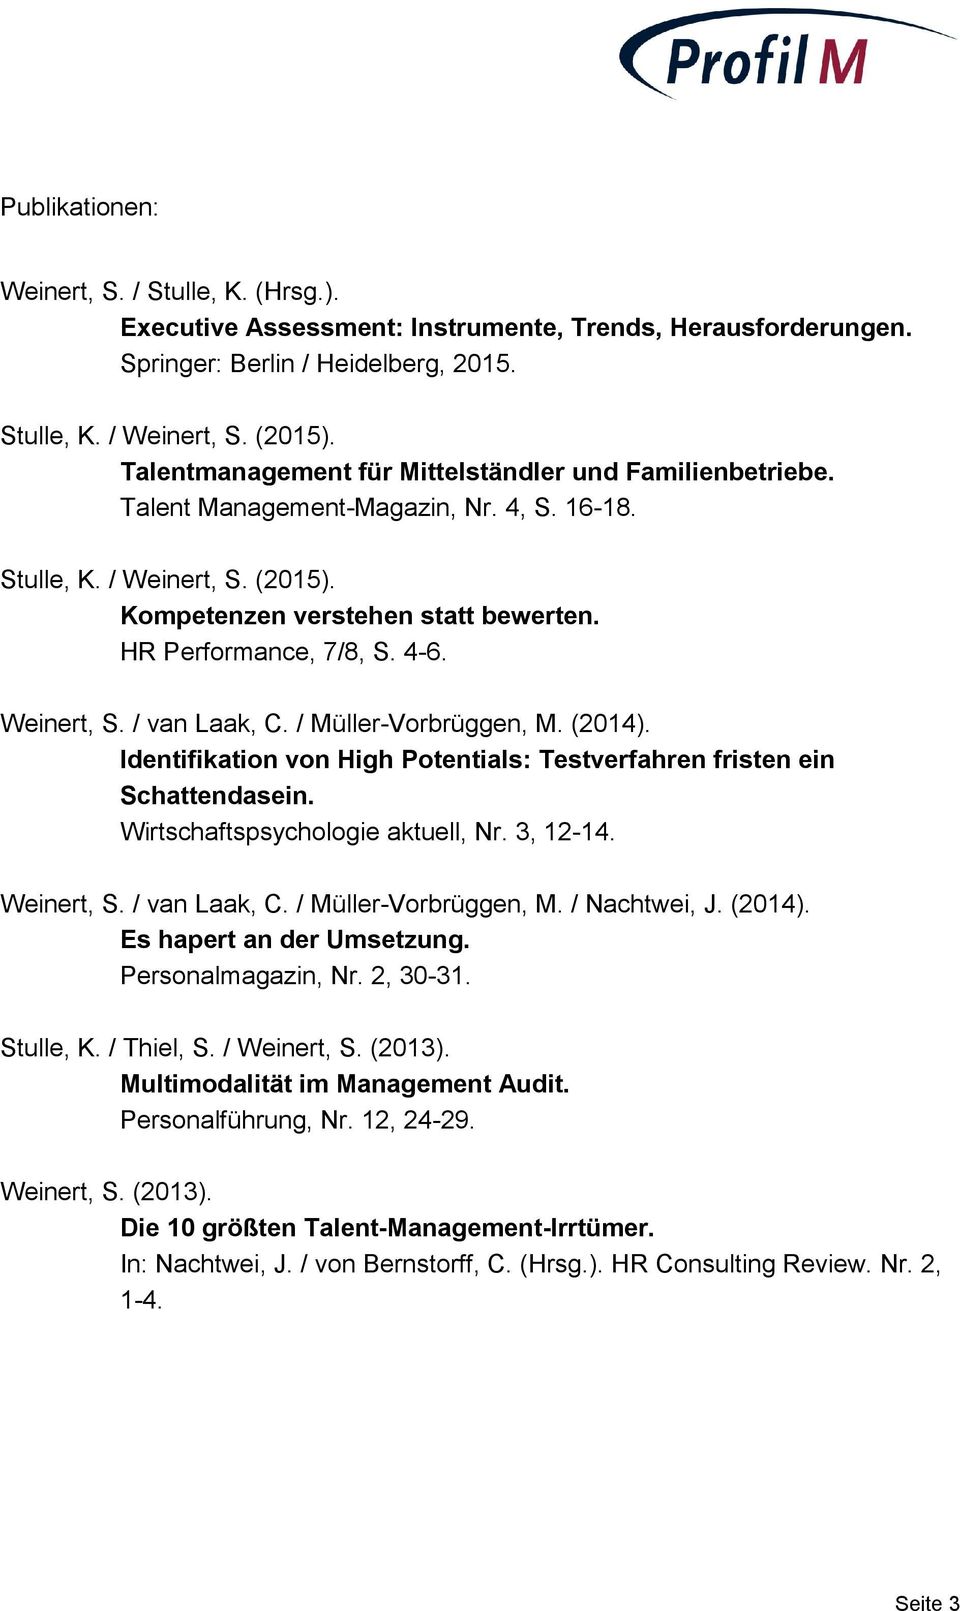 4-6. Weinert, S. / van Laak, C. / Müller-Vorbrüggen, M. (2014). Identifikation von High Potentials: Testverfahren fristen ein Schattendasein. Wirtschaftspsychologie aktuell, Nr. 3, 12-14. Weinert, S. / van Laak, C. / Müller-Vorbrüggen, M. / Nachtwei, J.